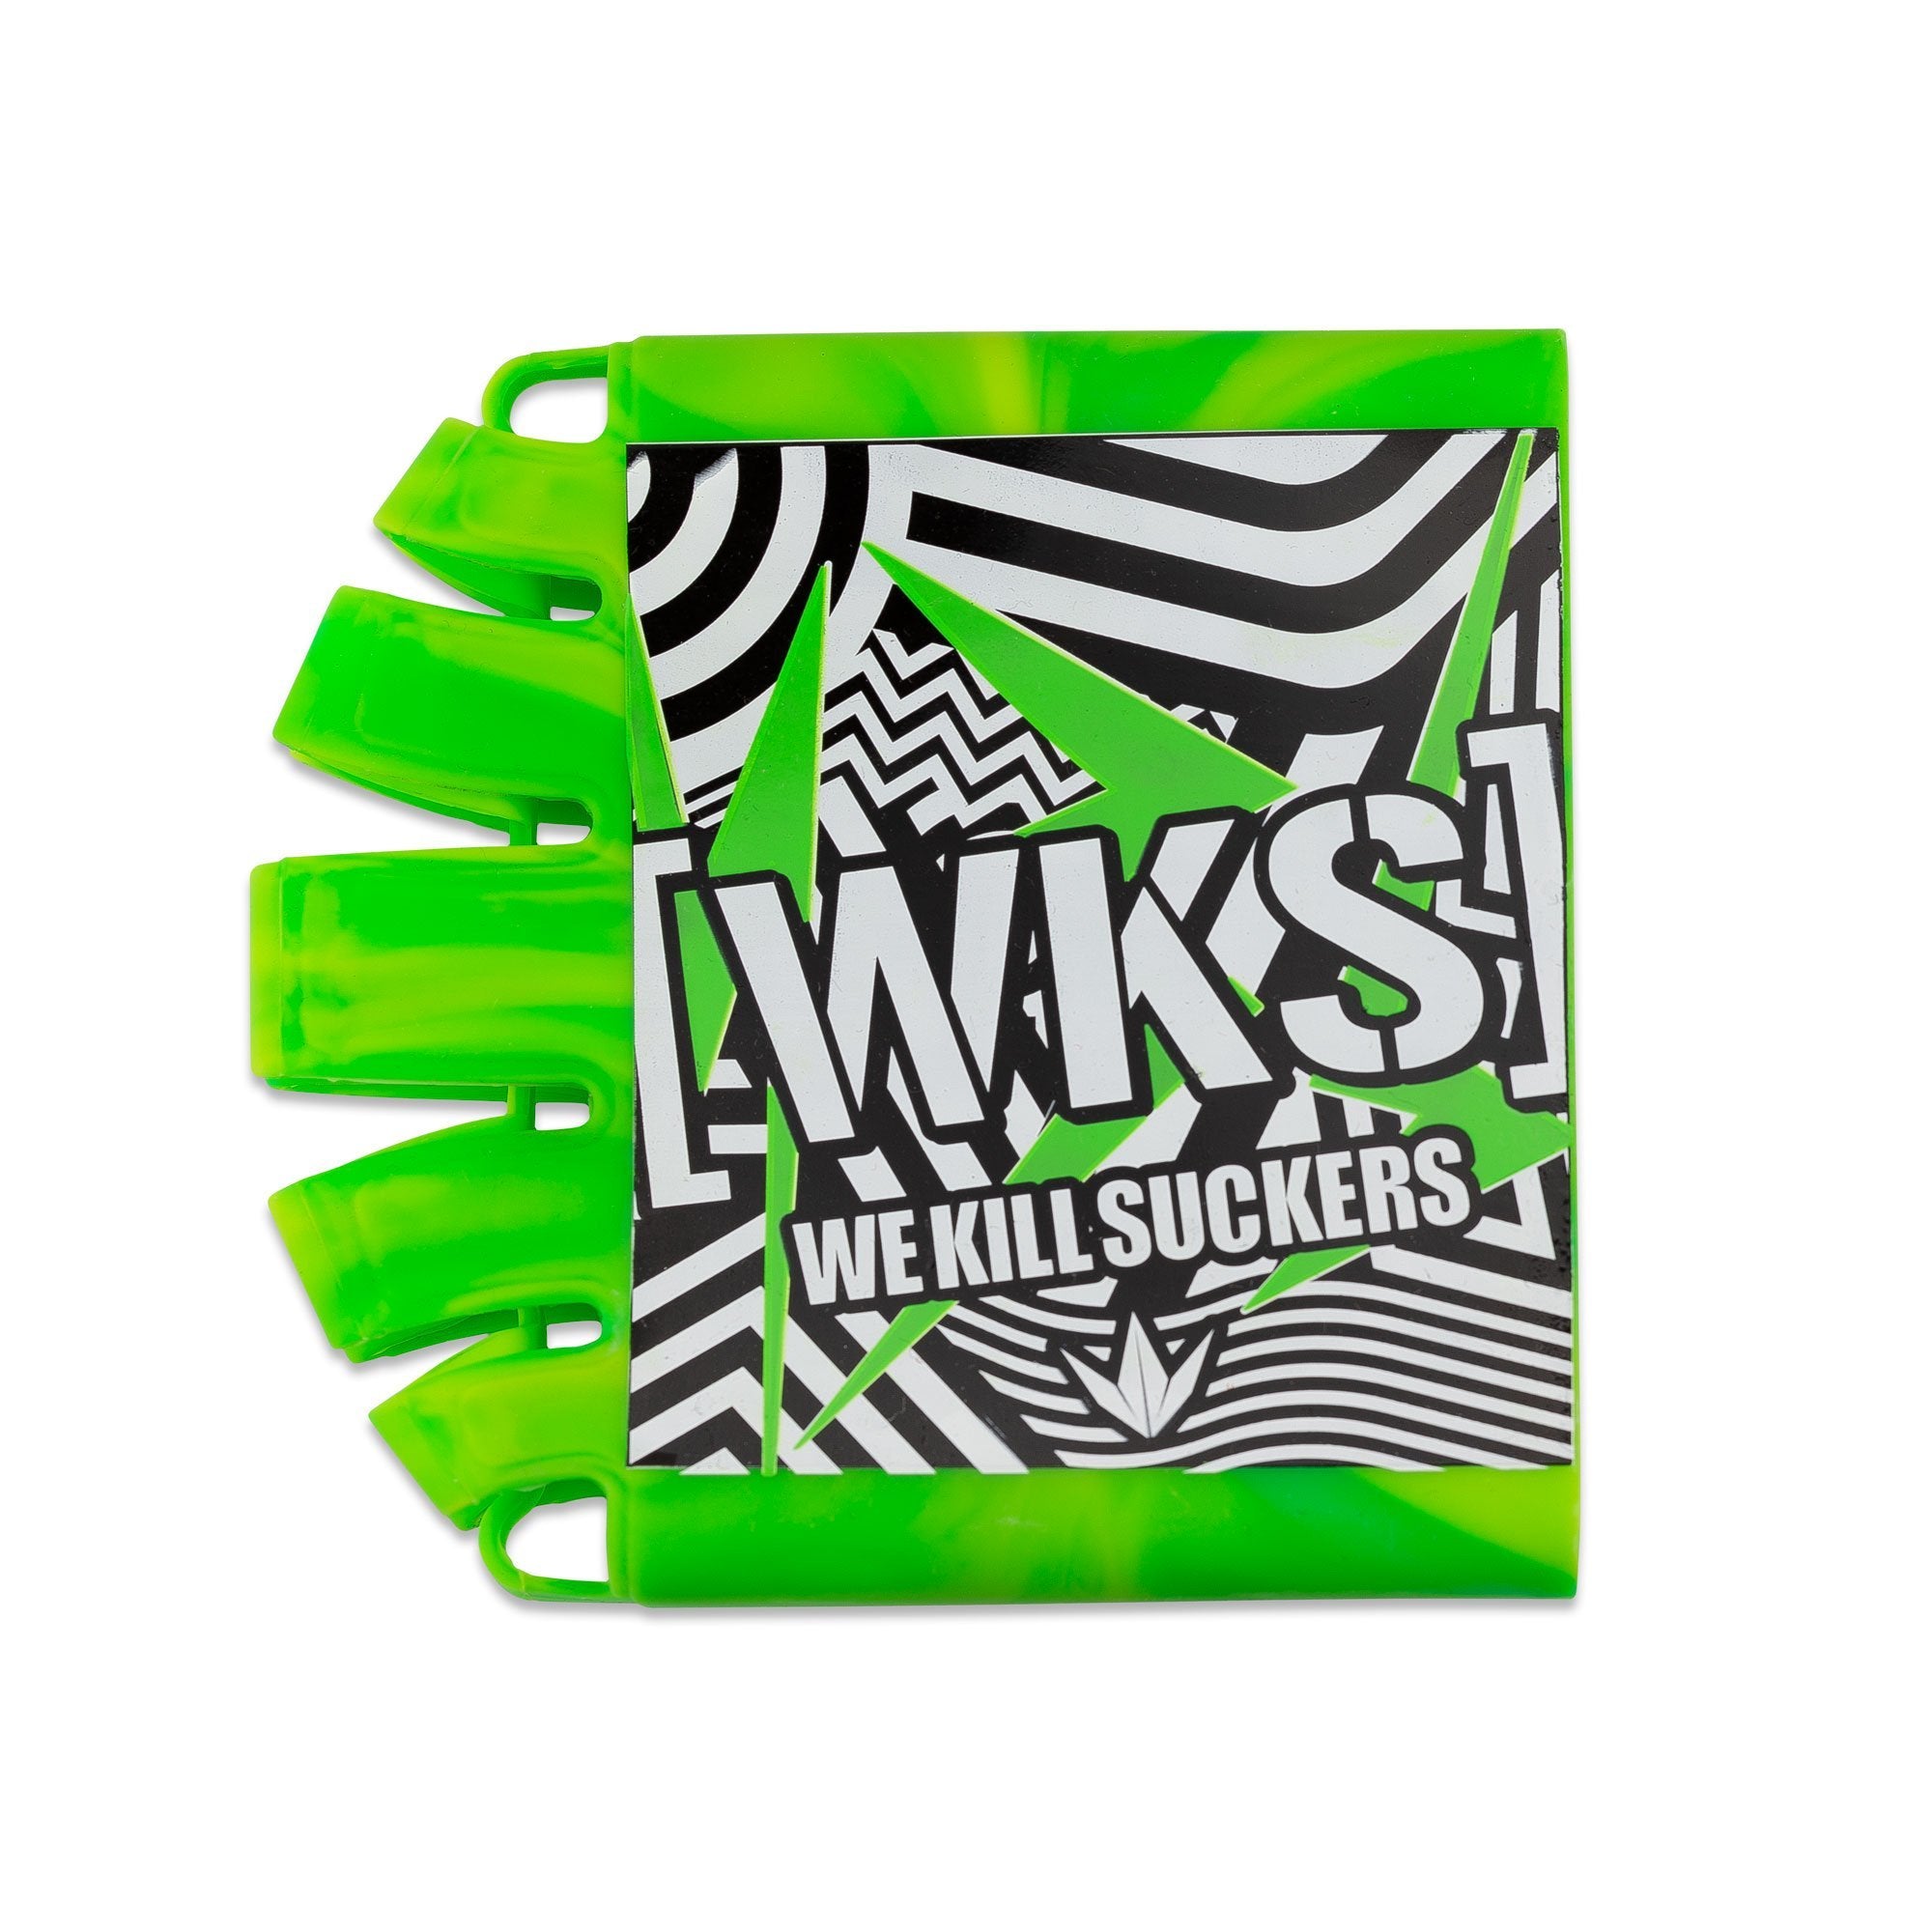 Bunkerkings - Knuckle Butt Tank Cover - WKS Shred - Lime